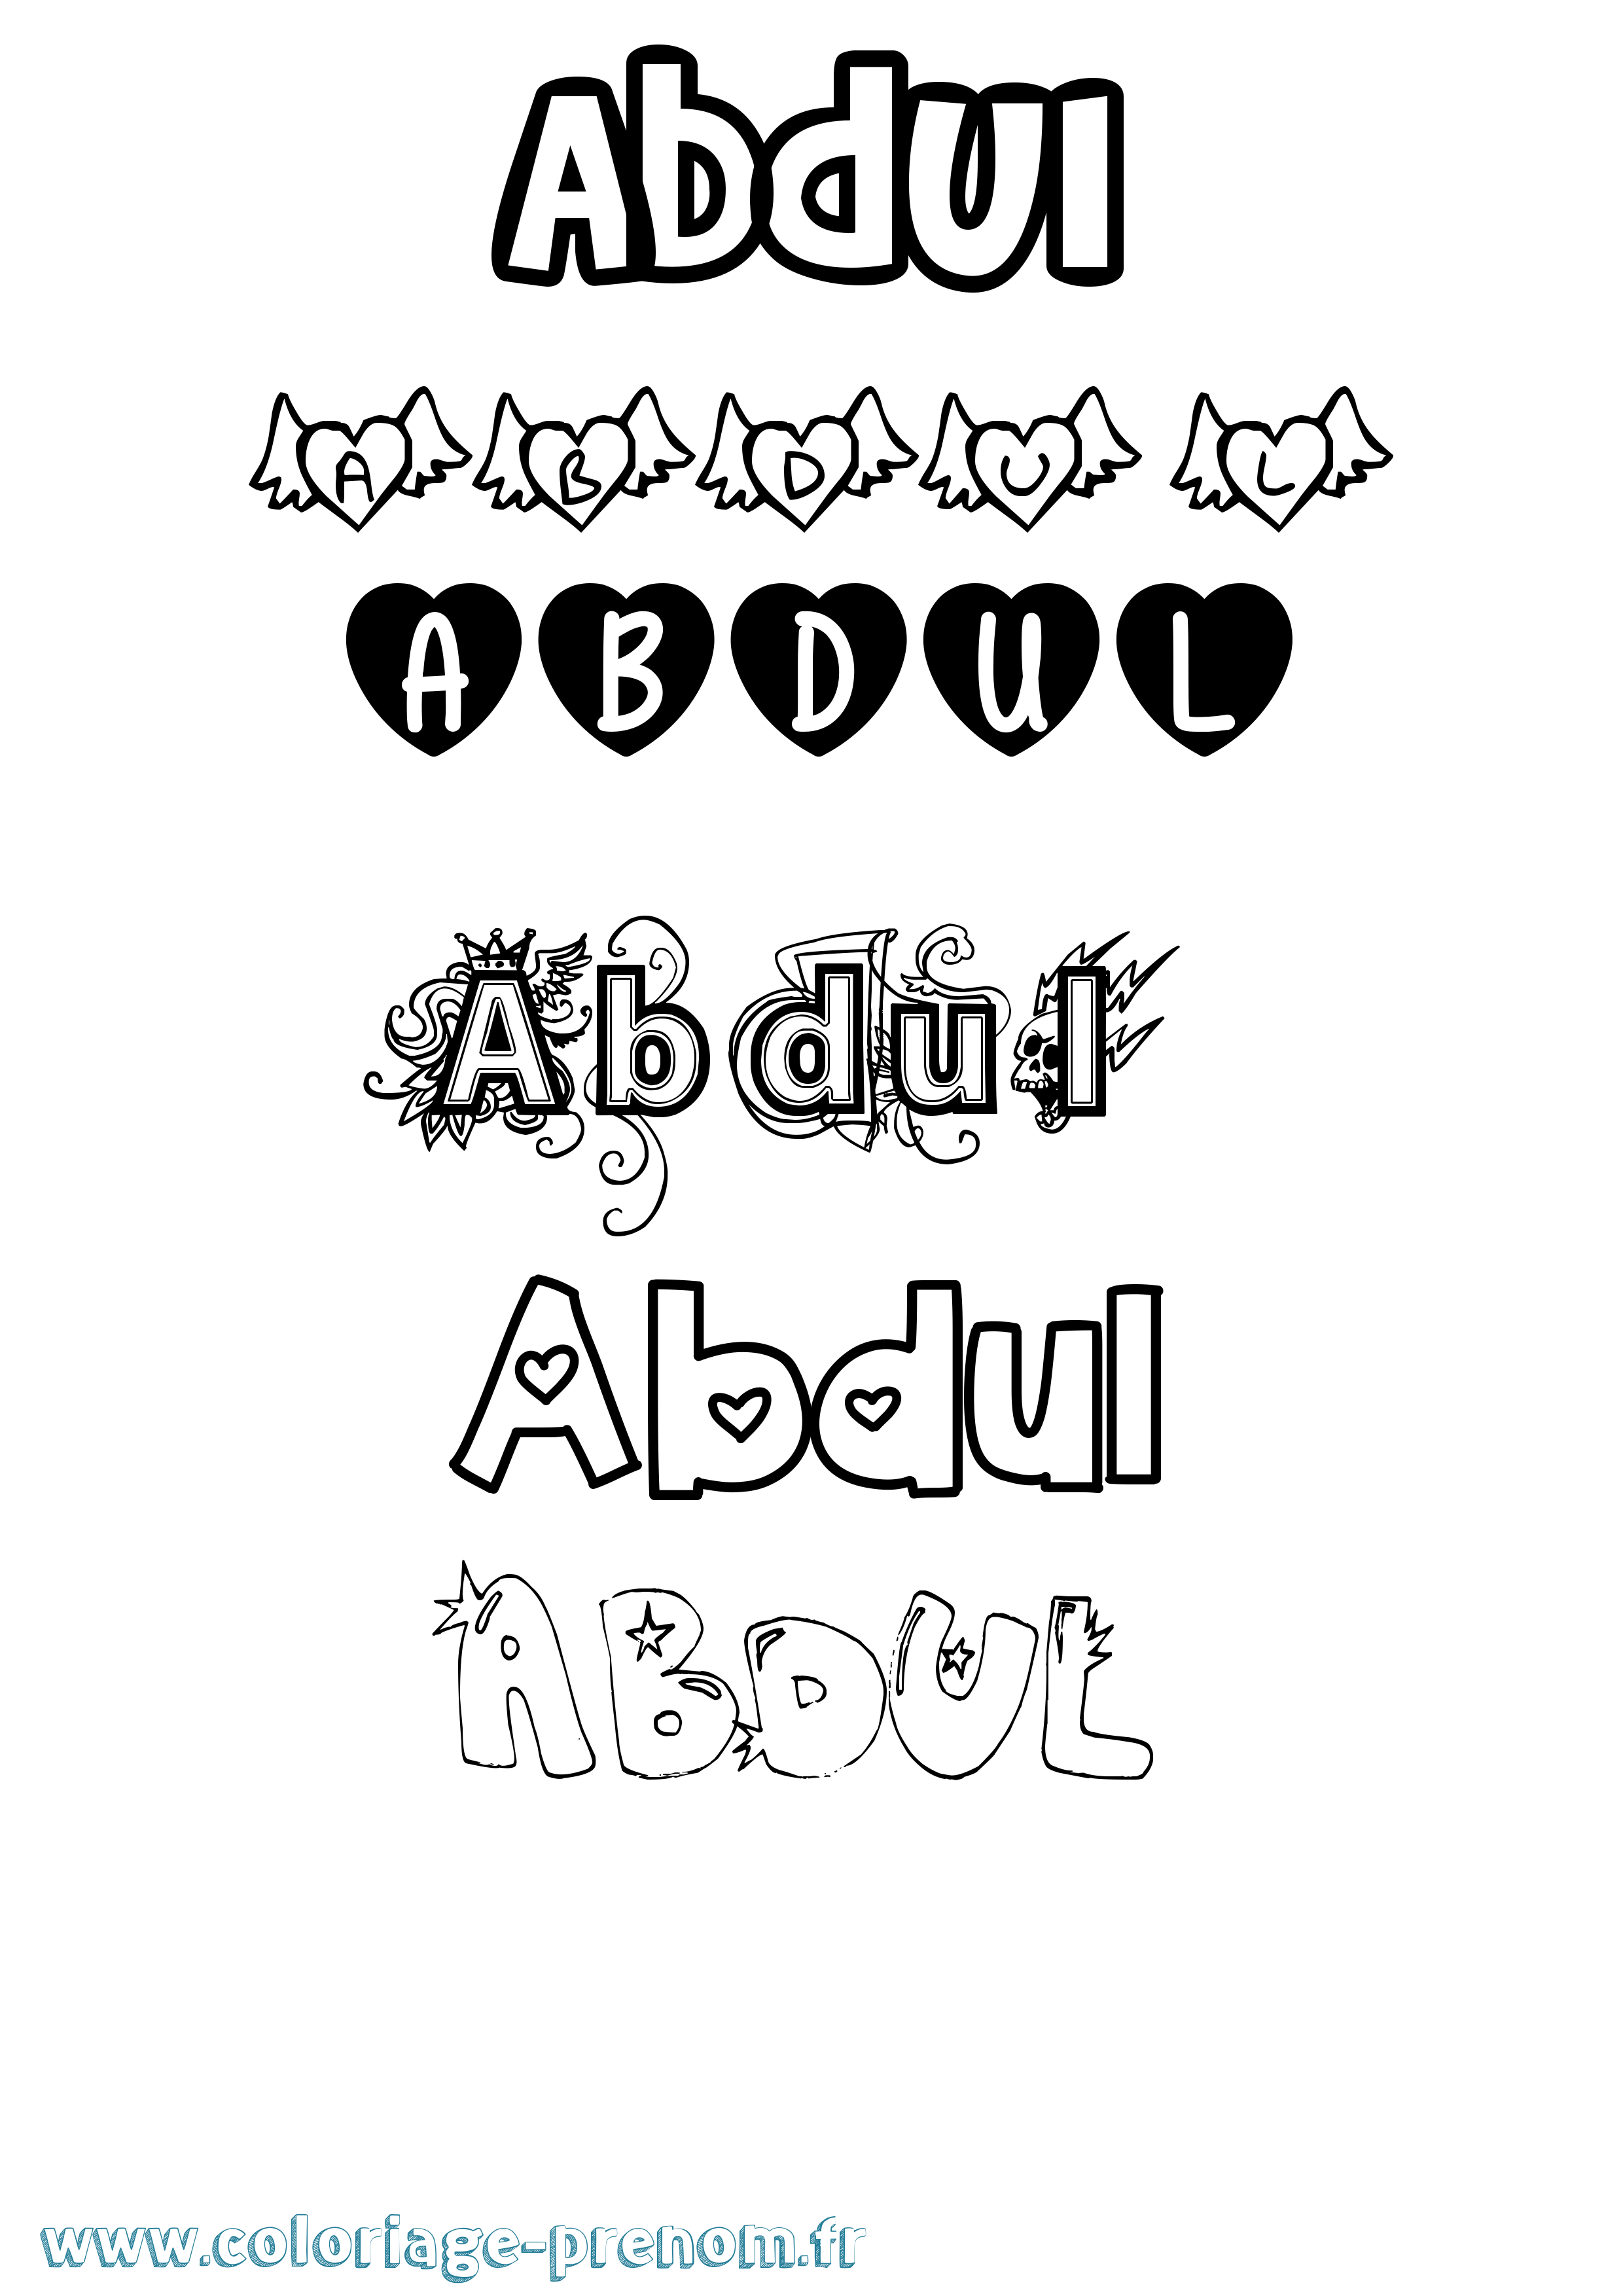 Coloriage prénom Abdul Girly